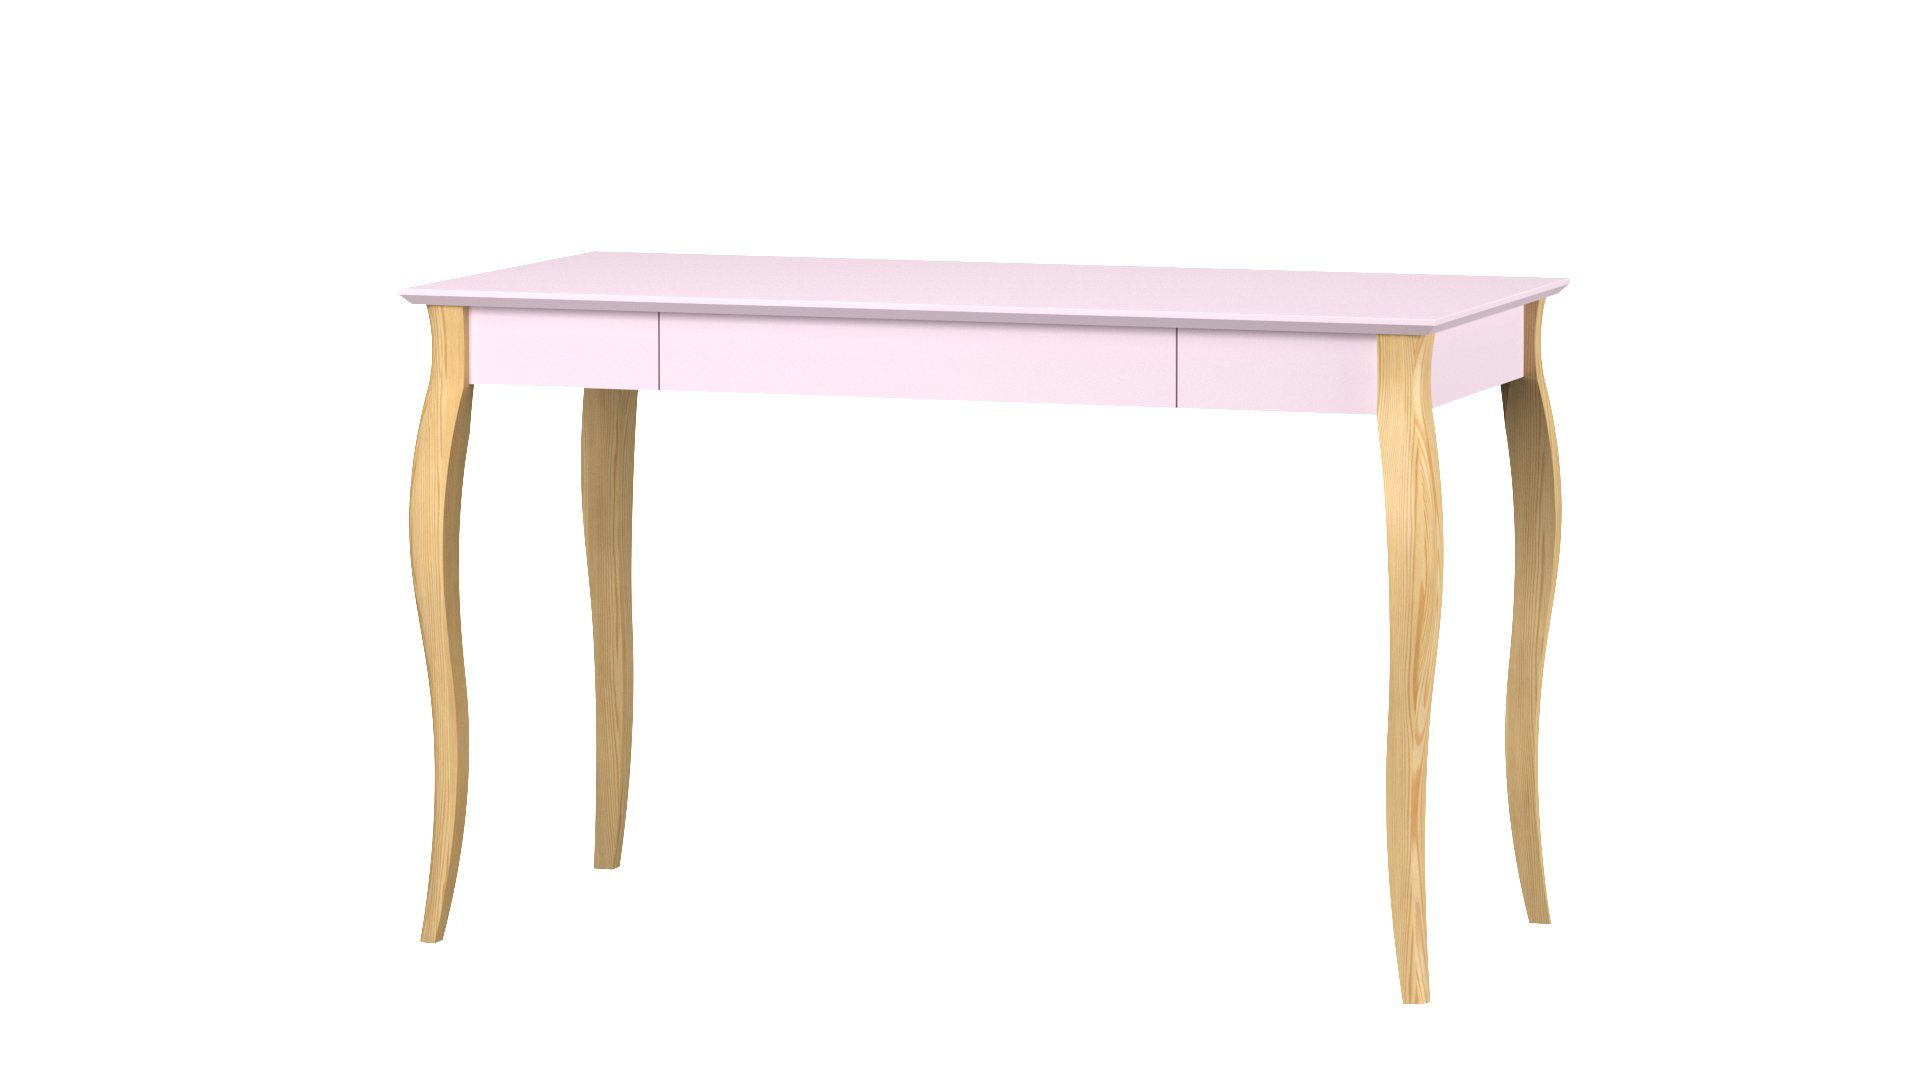 Buchenholz - - MDF-Platte Schreibtisch - Schublade Jugendzimmer Kinderschreibtisch Moderner Rosa Siblo mit minimalistisches (Kinderschreibtisch Schreibtisch Design mit Kinderzimmer - - Maila Maila Schublade) -